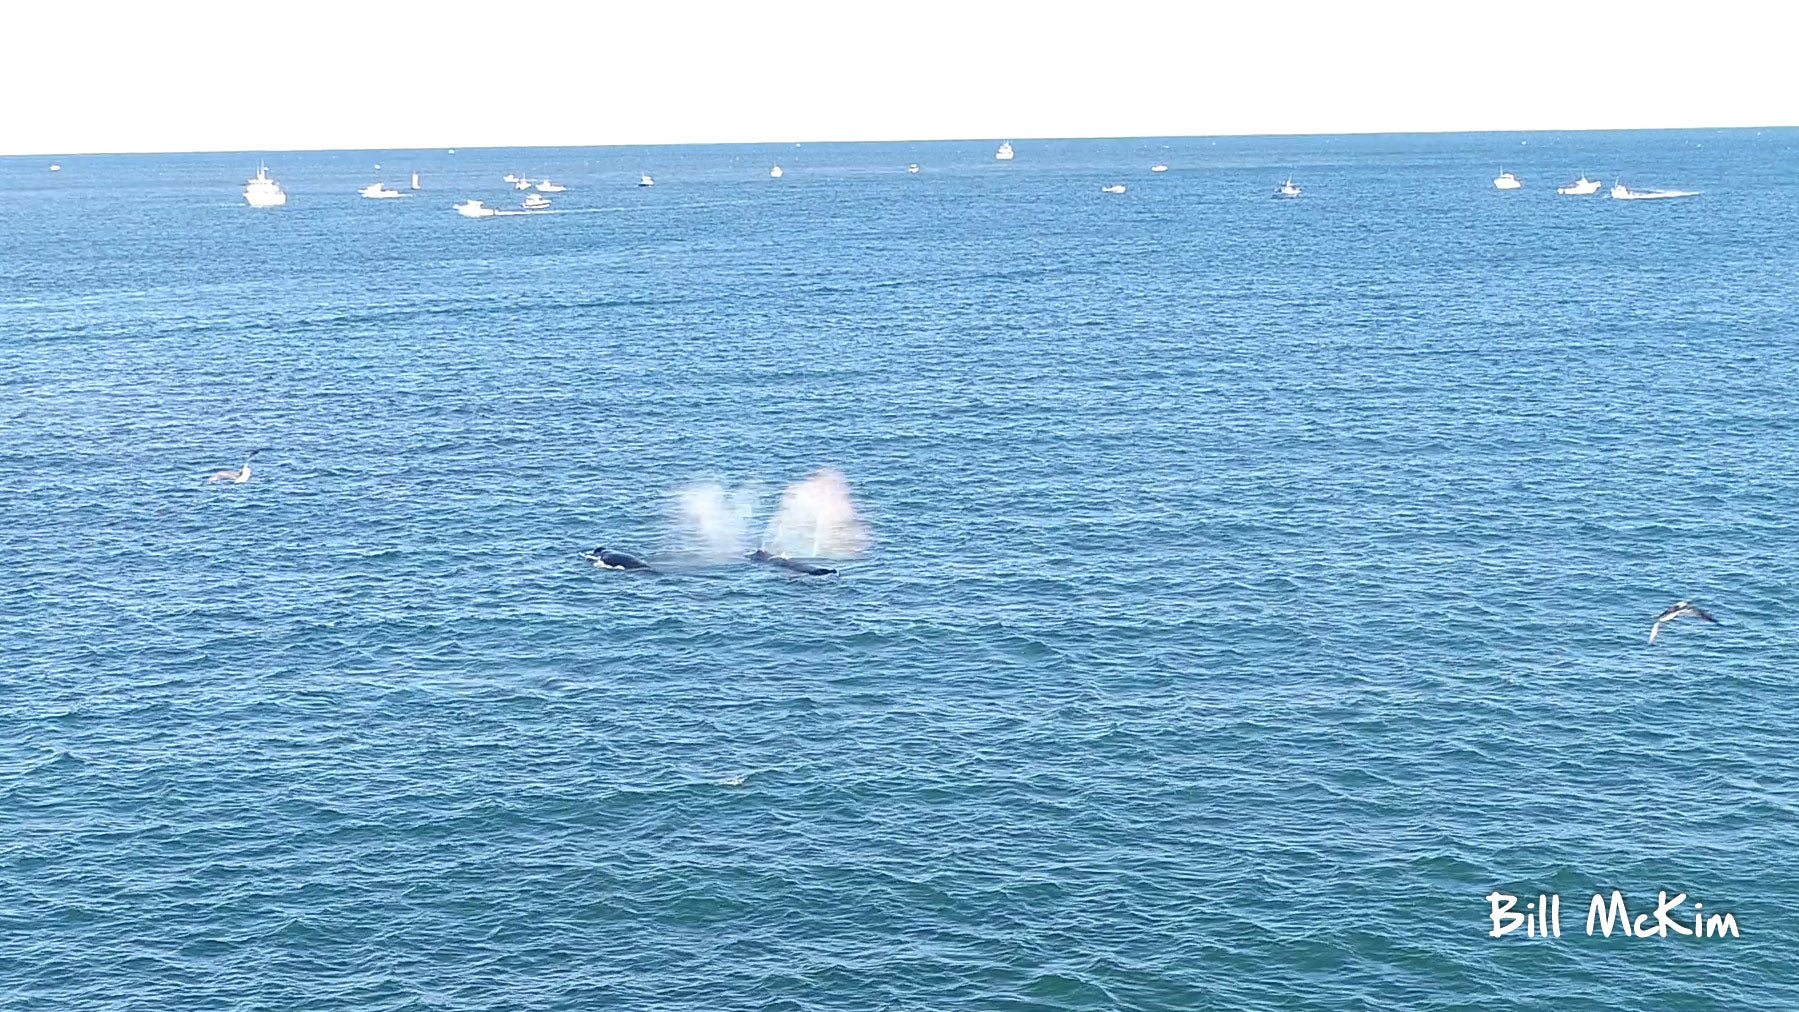 aerial whale photos dji phantom 4 pro by bill mckim New Jersey coastline 